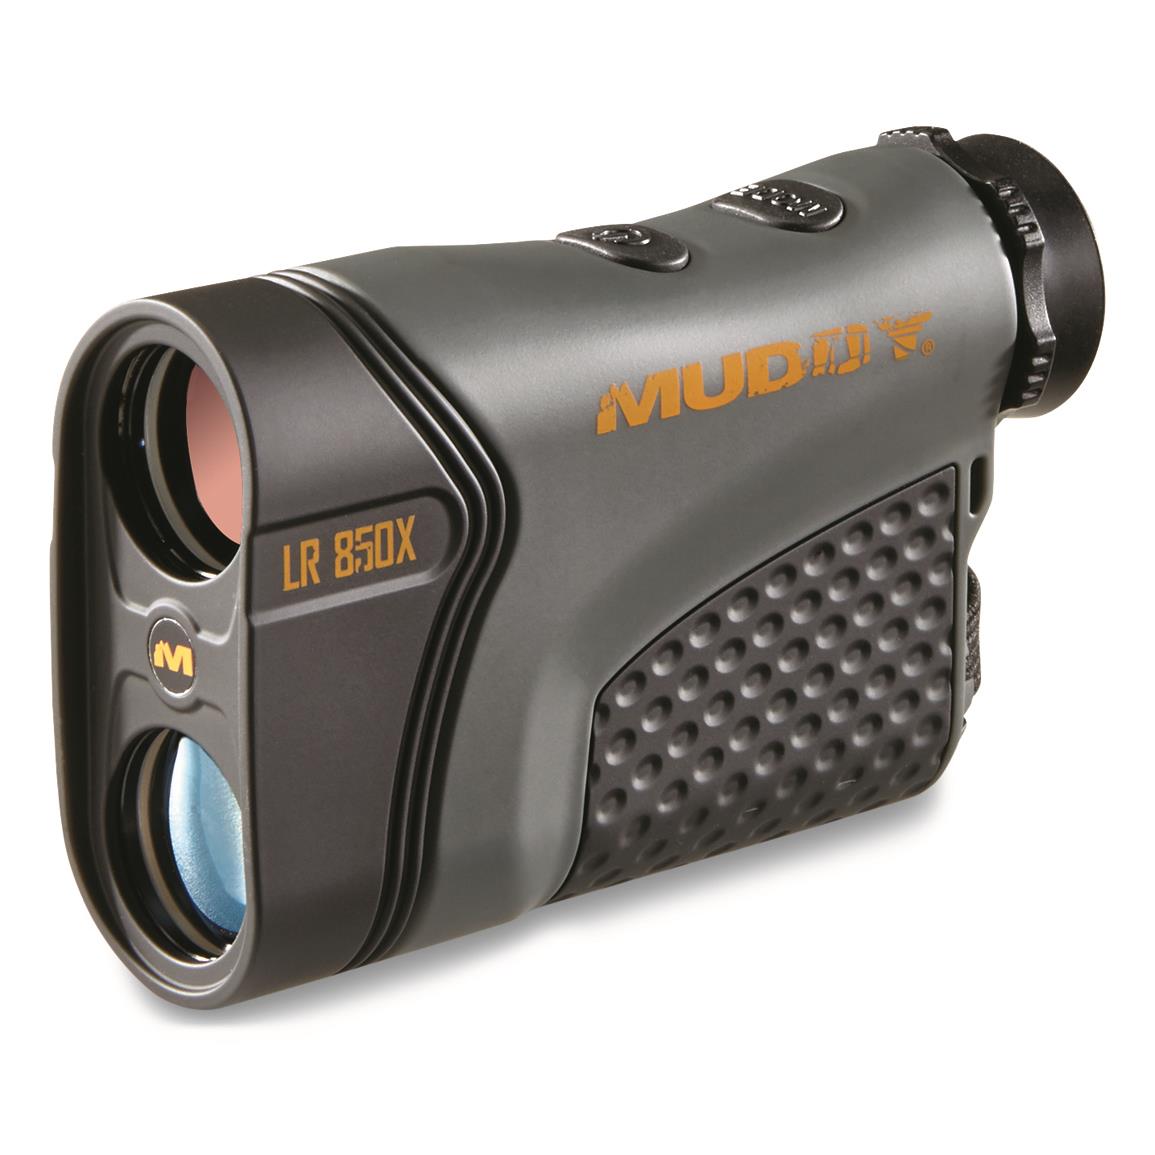 Muddy LR850X Laser Range Finder 850 Yard